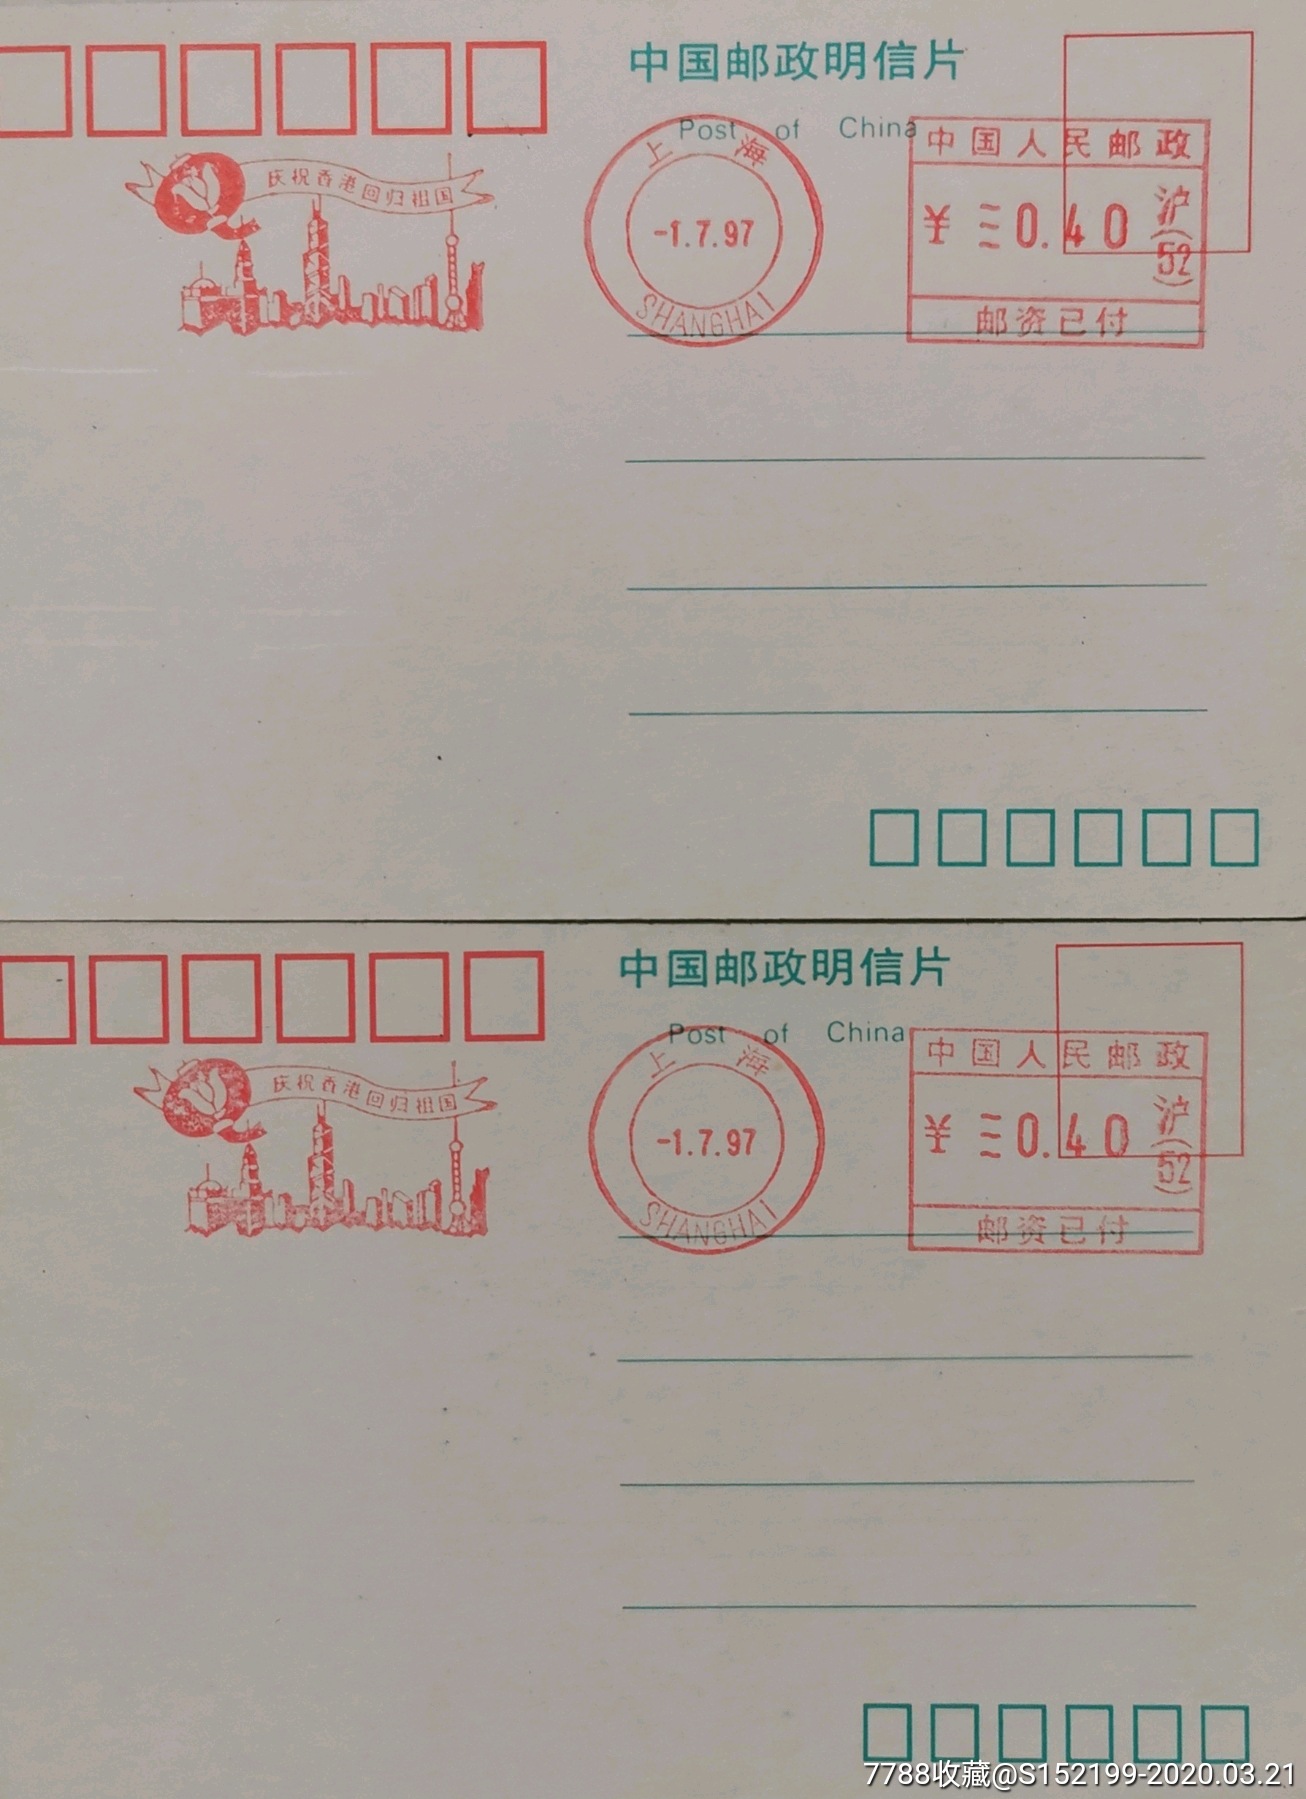 1997年上海邮资机宣传戳香港回归祖国东方电视塔灯笼中国人民邮政邮资